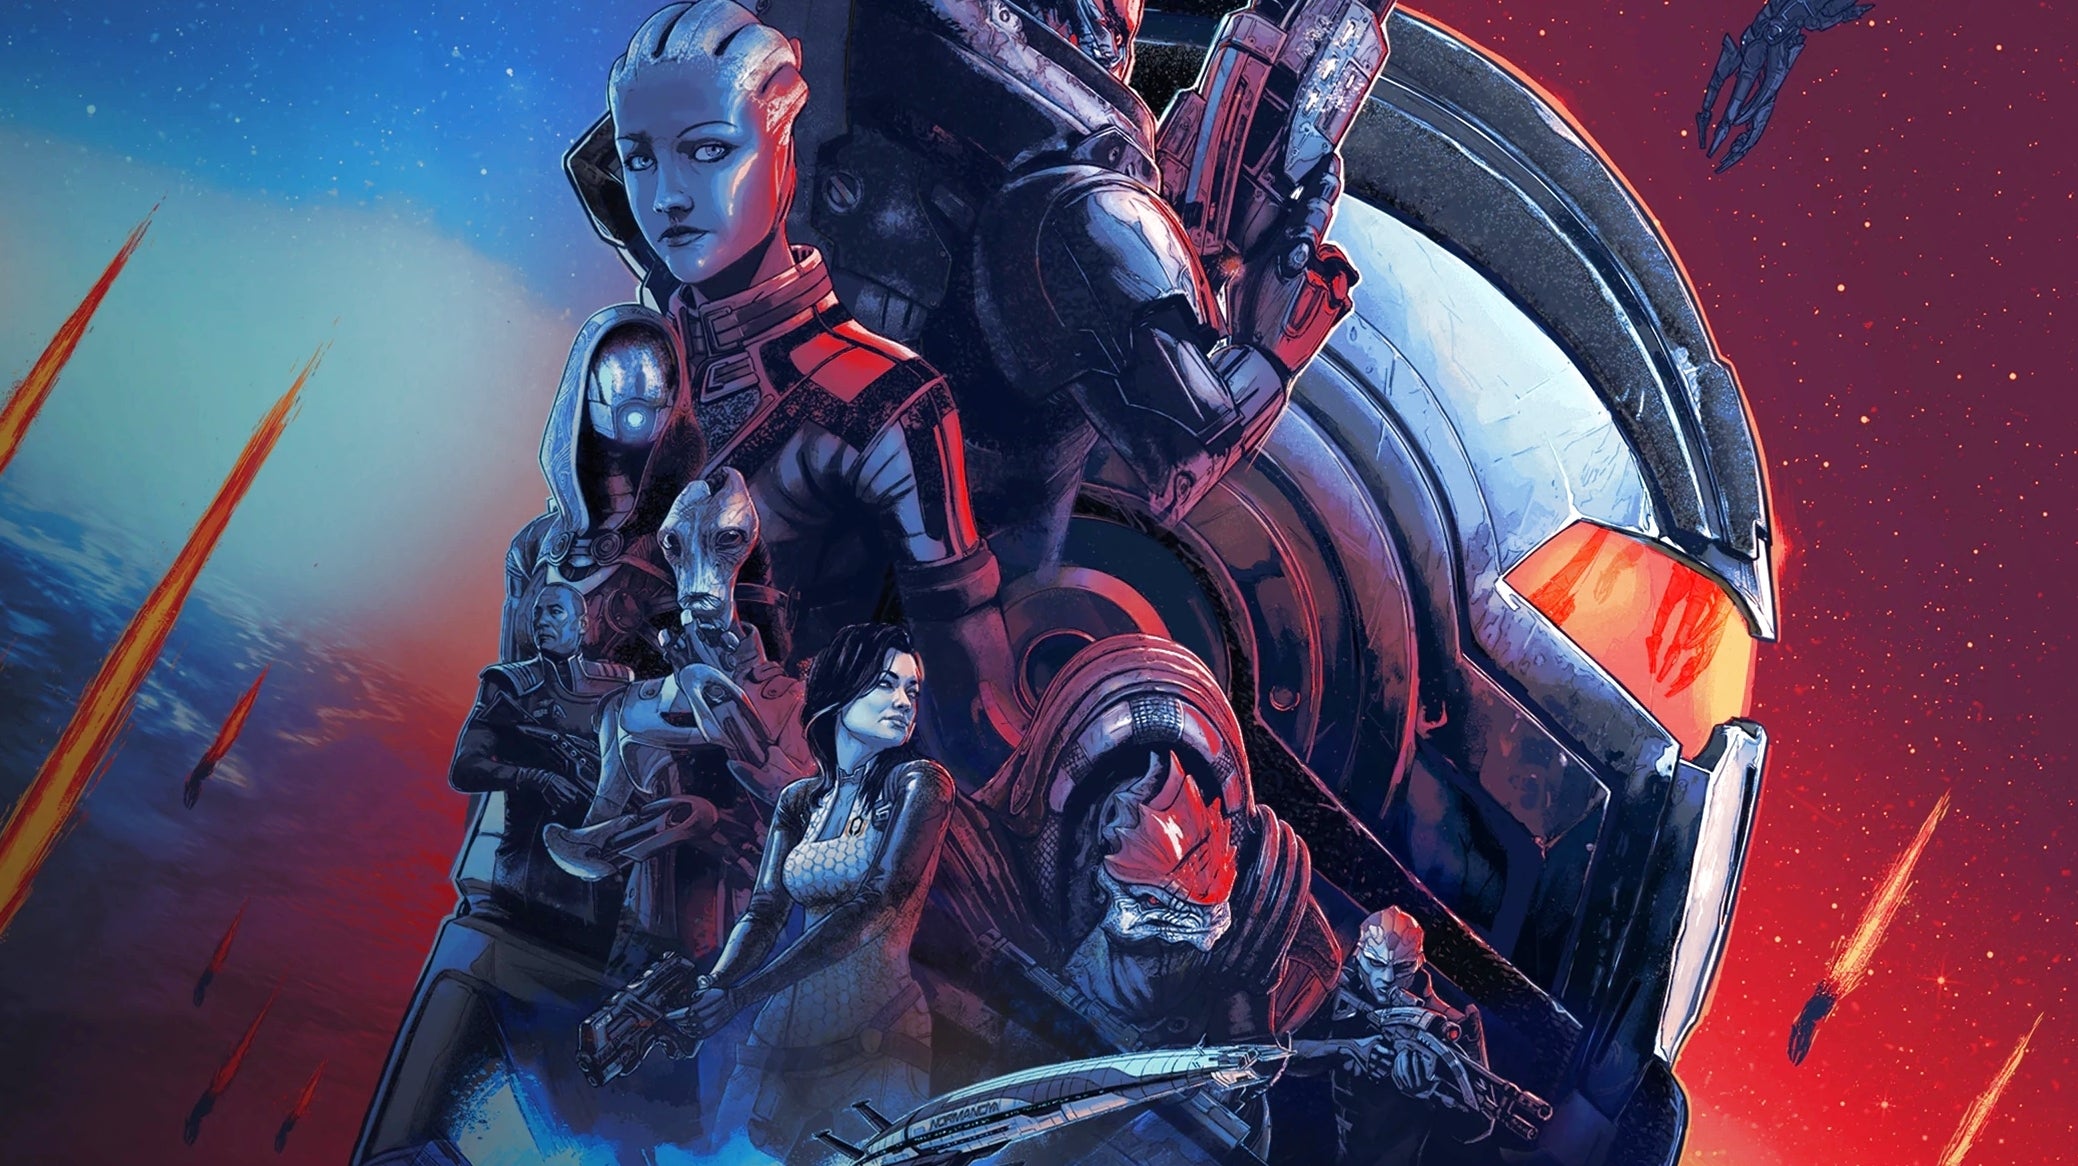 Imagem para Mass Effect Legendary Edition review - Odisseia espacial